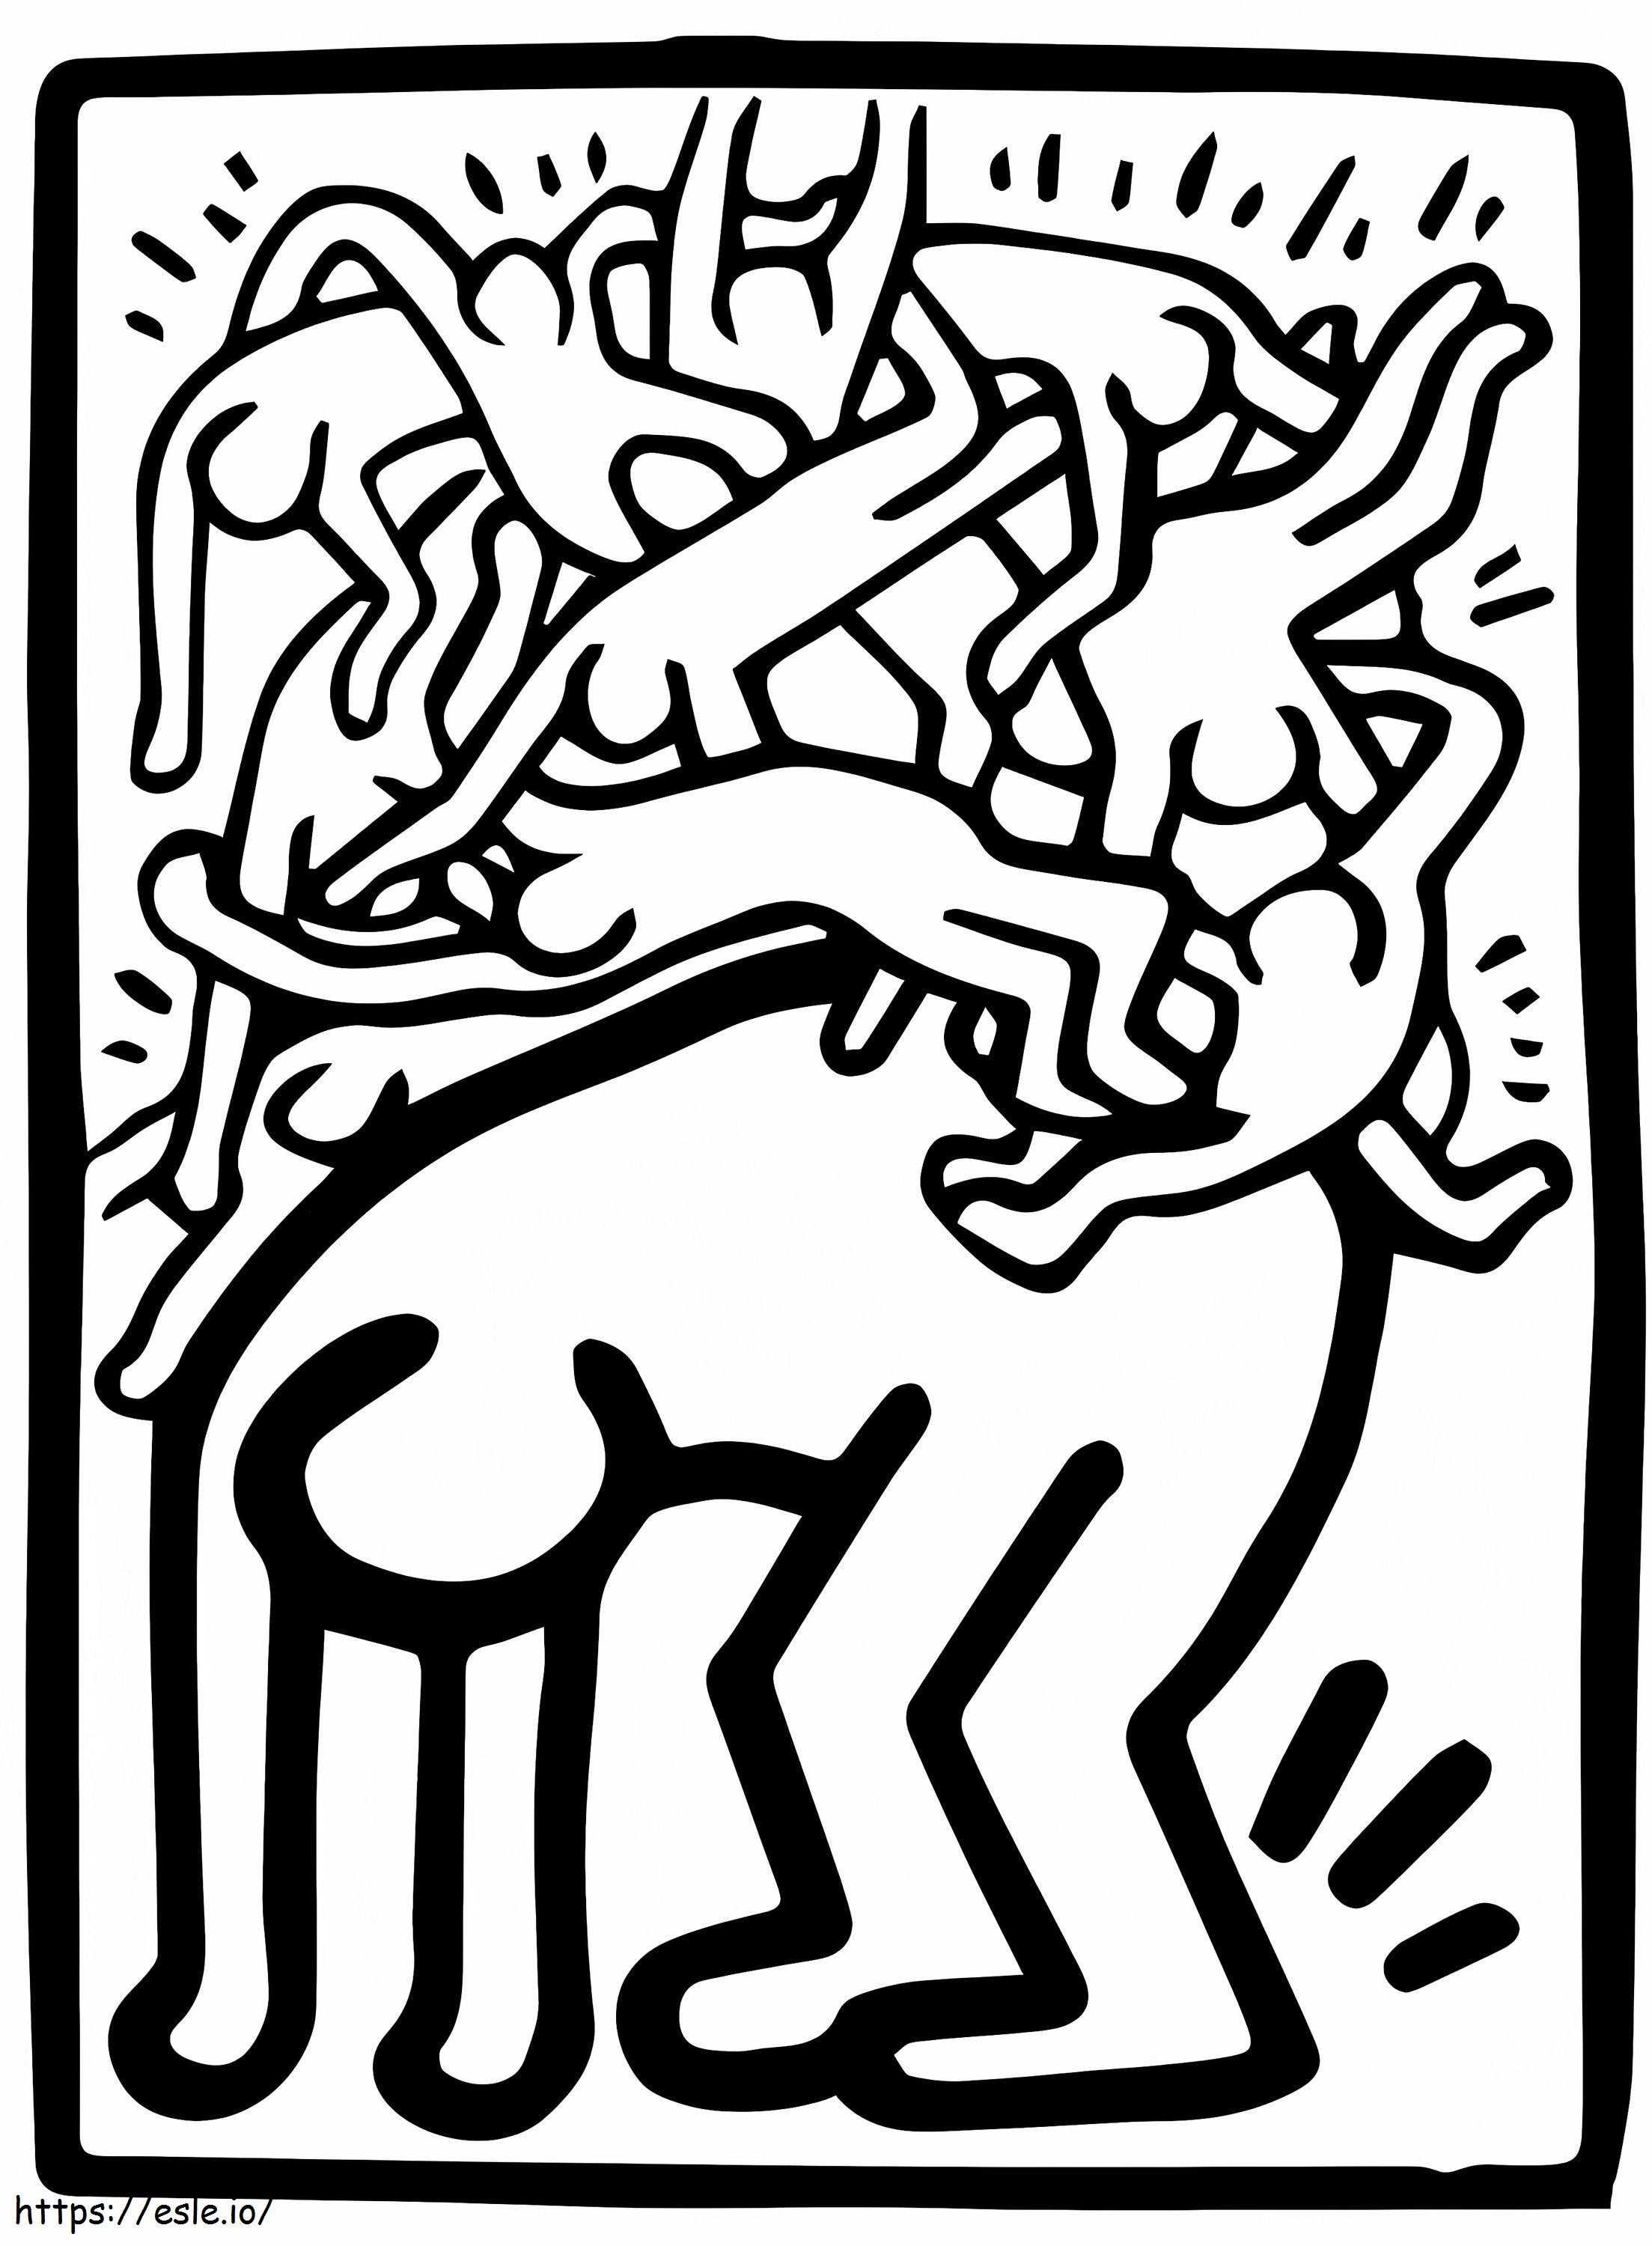  Fight Aids Worldwide von Keith Haring ausmalbilder